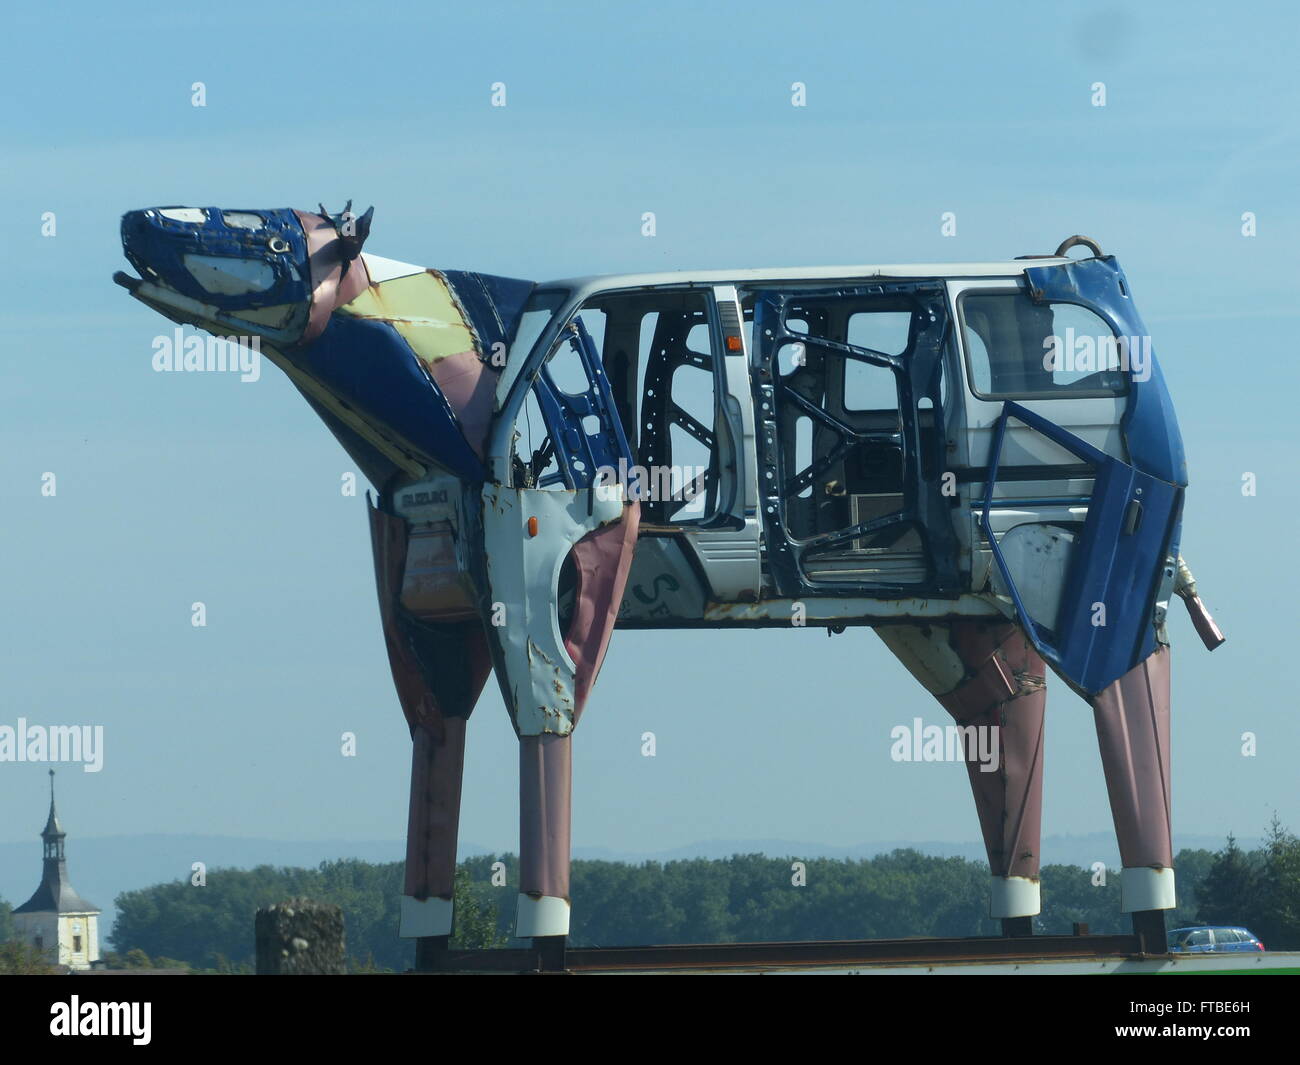 Benvenuti in Repubblica ceca - Hradec Kralove. Bull gigante fatta da posta indesiderata di parti di automobili, stand Alto per accogliere i visitatori a questo oriente cittadina boema Foto Stock